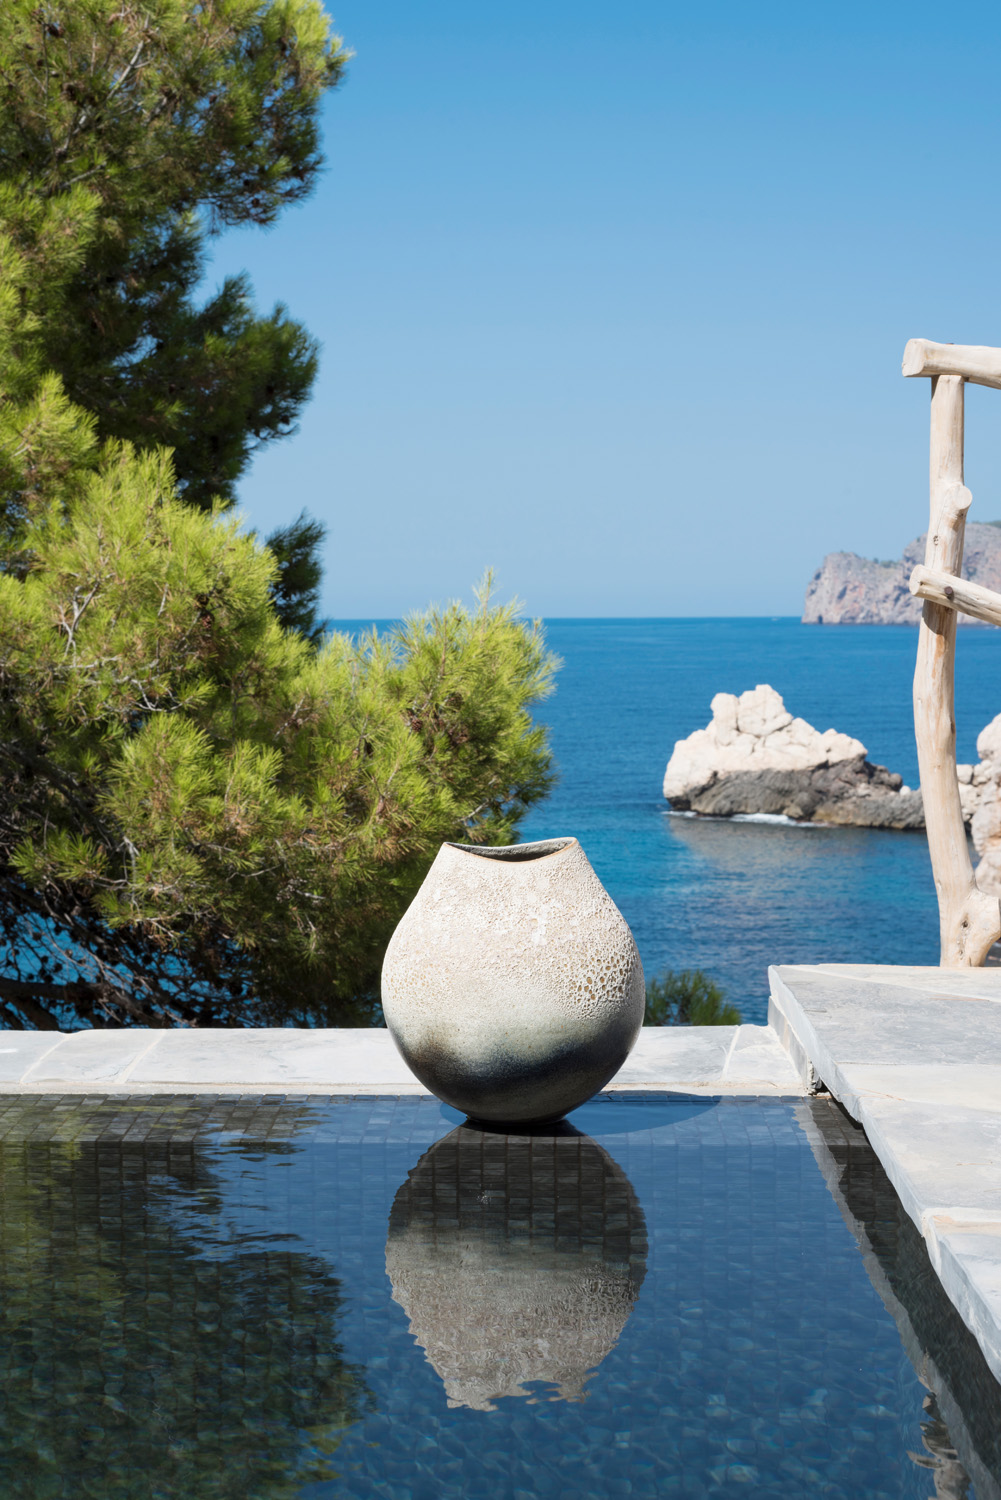 MoreDesign Cala Deia - luxury architecture and design in Ibiza